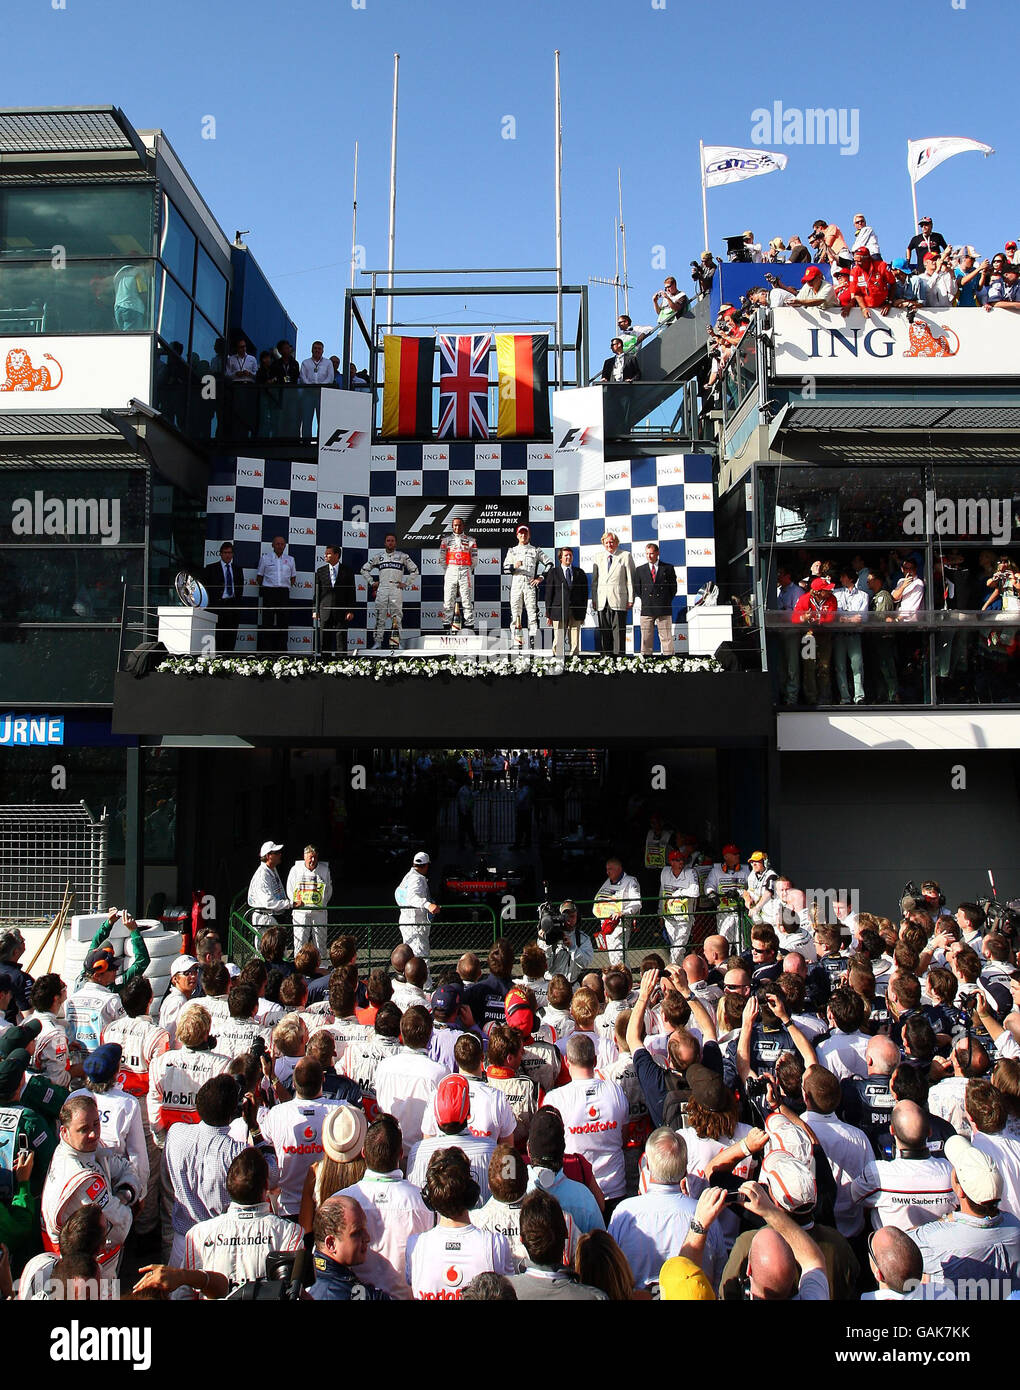 Carreras de Fórmula Uno - Gran Premio de Australia - Carrera - Albert Park. Lewis Hamilton de McLaren celebra su victoria durante el Gran Premio de Fórmula Uno, Australia, en Albert Park, Melbourne, Australia. Foto de stock